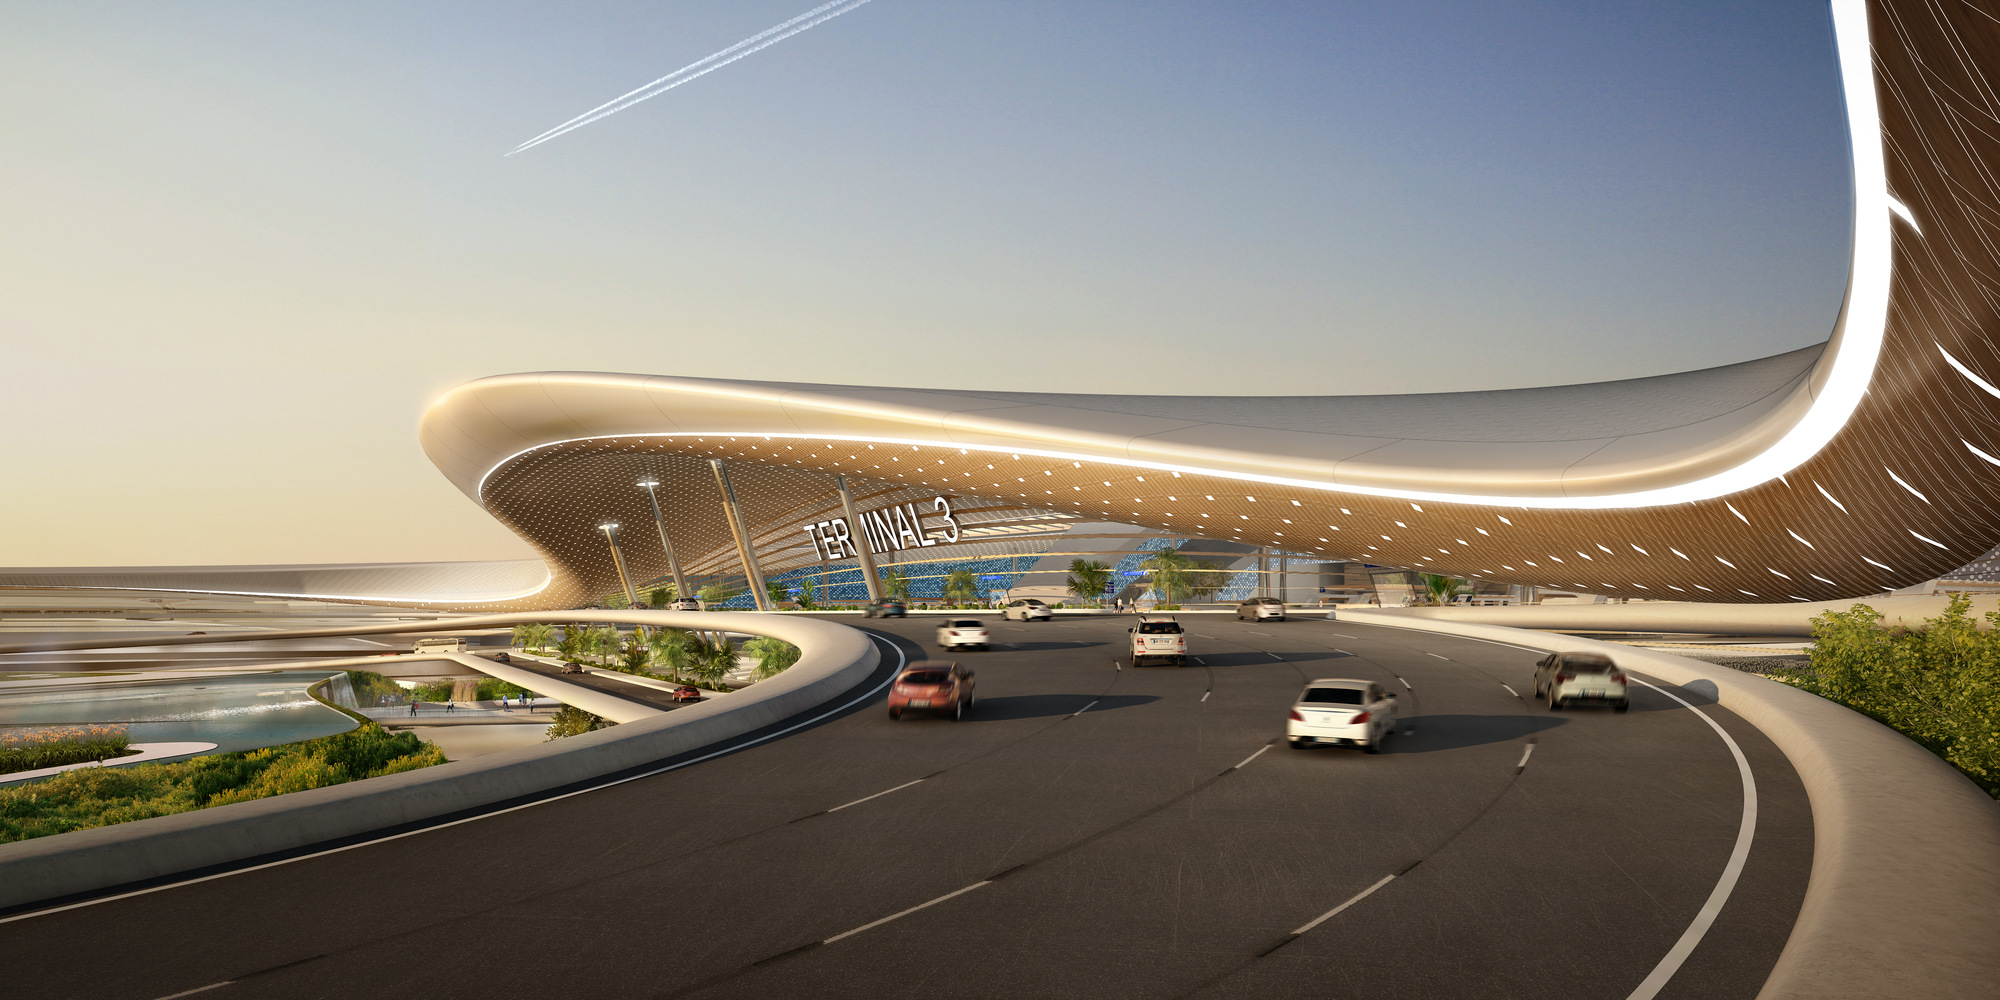 UNStudio/ Ben van Berkel propose innovative model for Terminal 3 of Taiwan Taoyuan International Airport